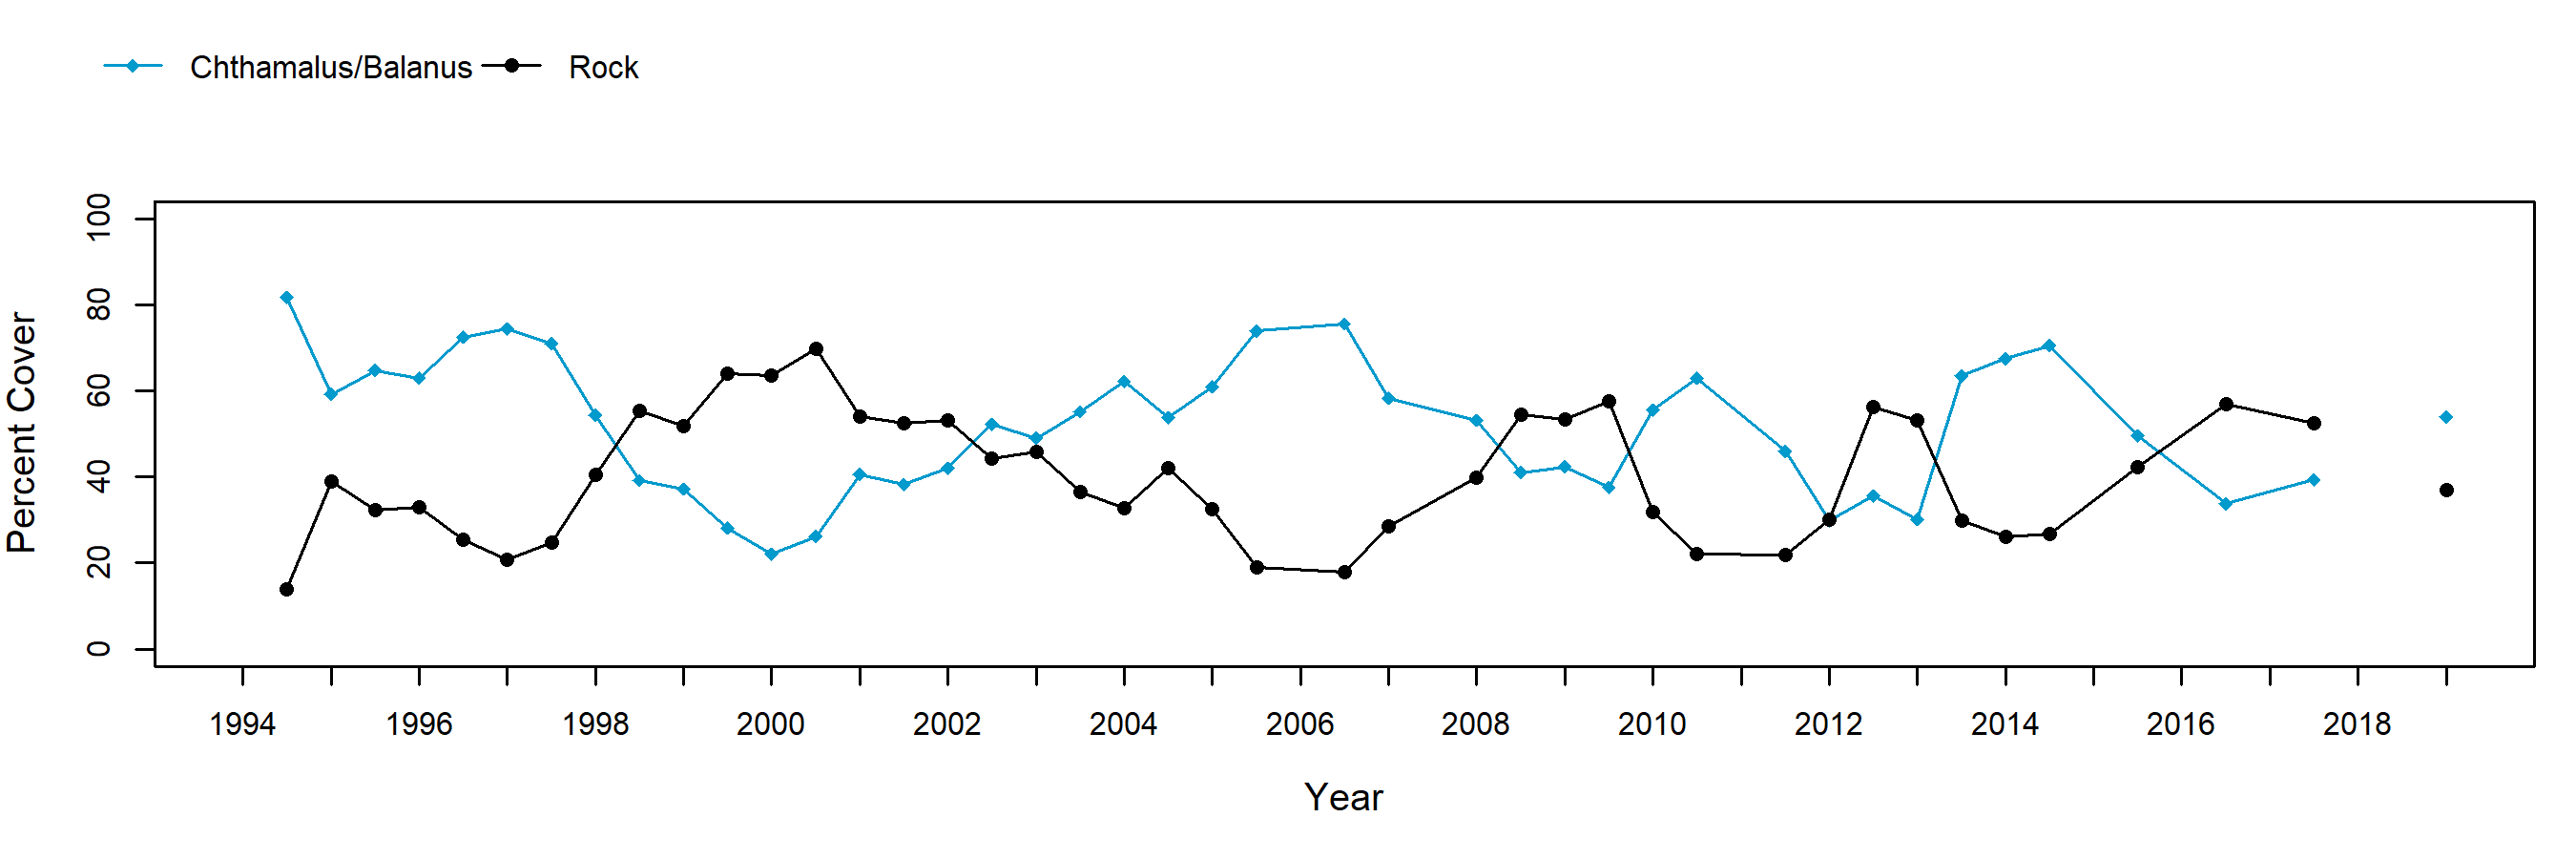 Trailer barnacle trend plot